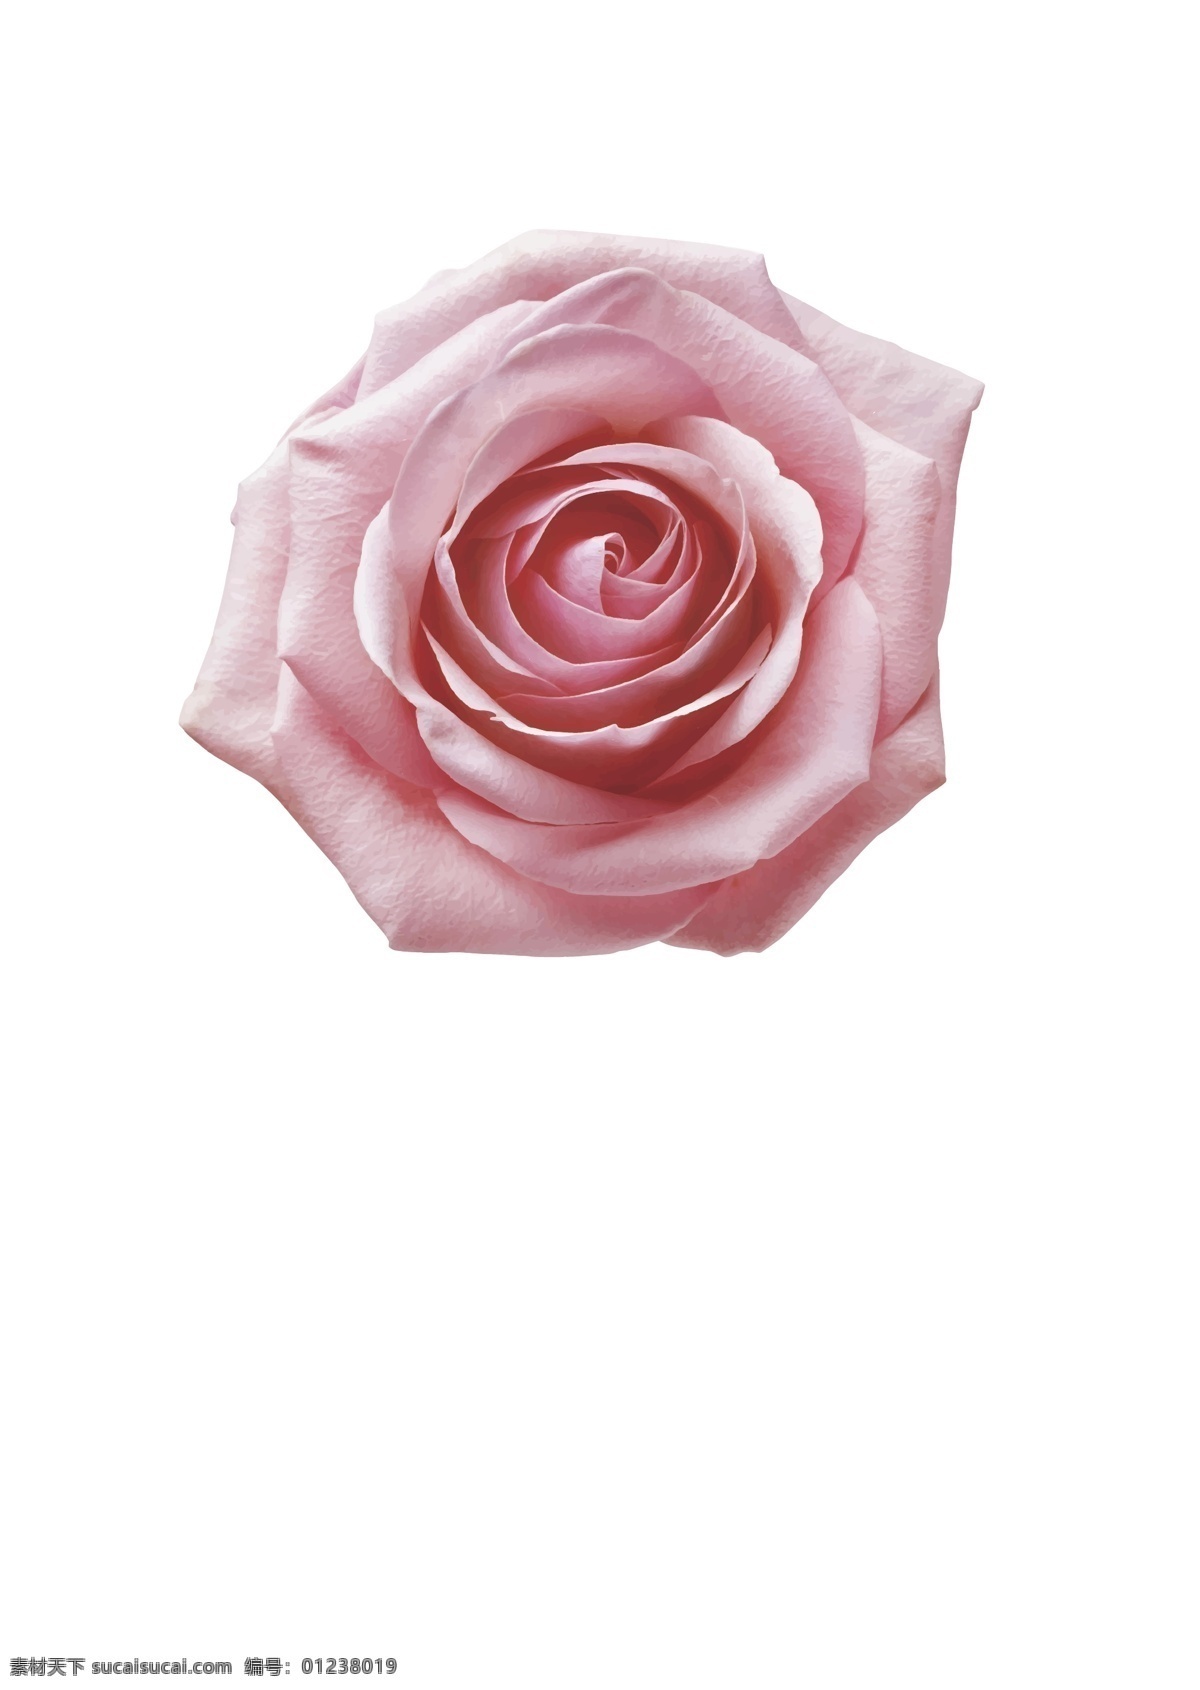 玫瑰 粉色玫瑰花 矢量 源文件 玫瑰花 花朵 植物 花卉 护肤 矢量源文件 生物世界 花草